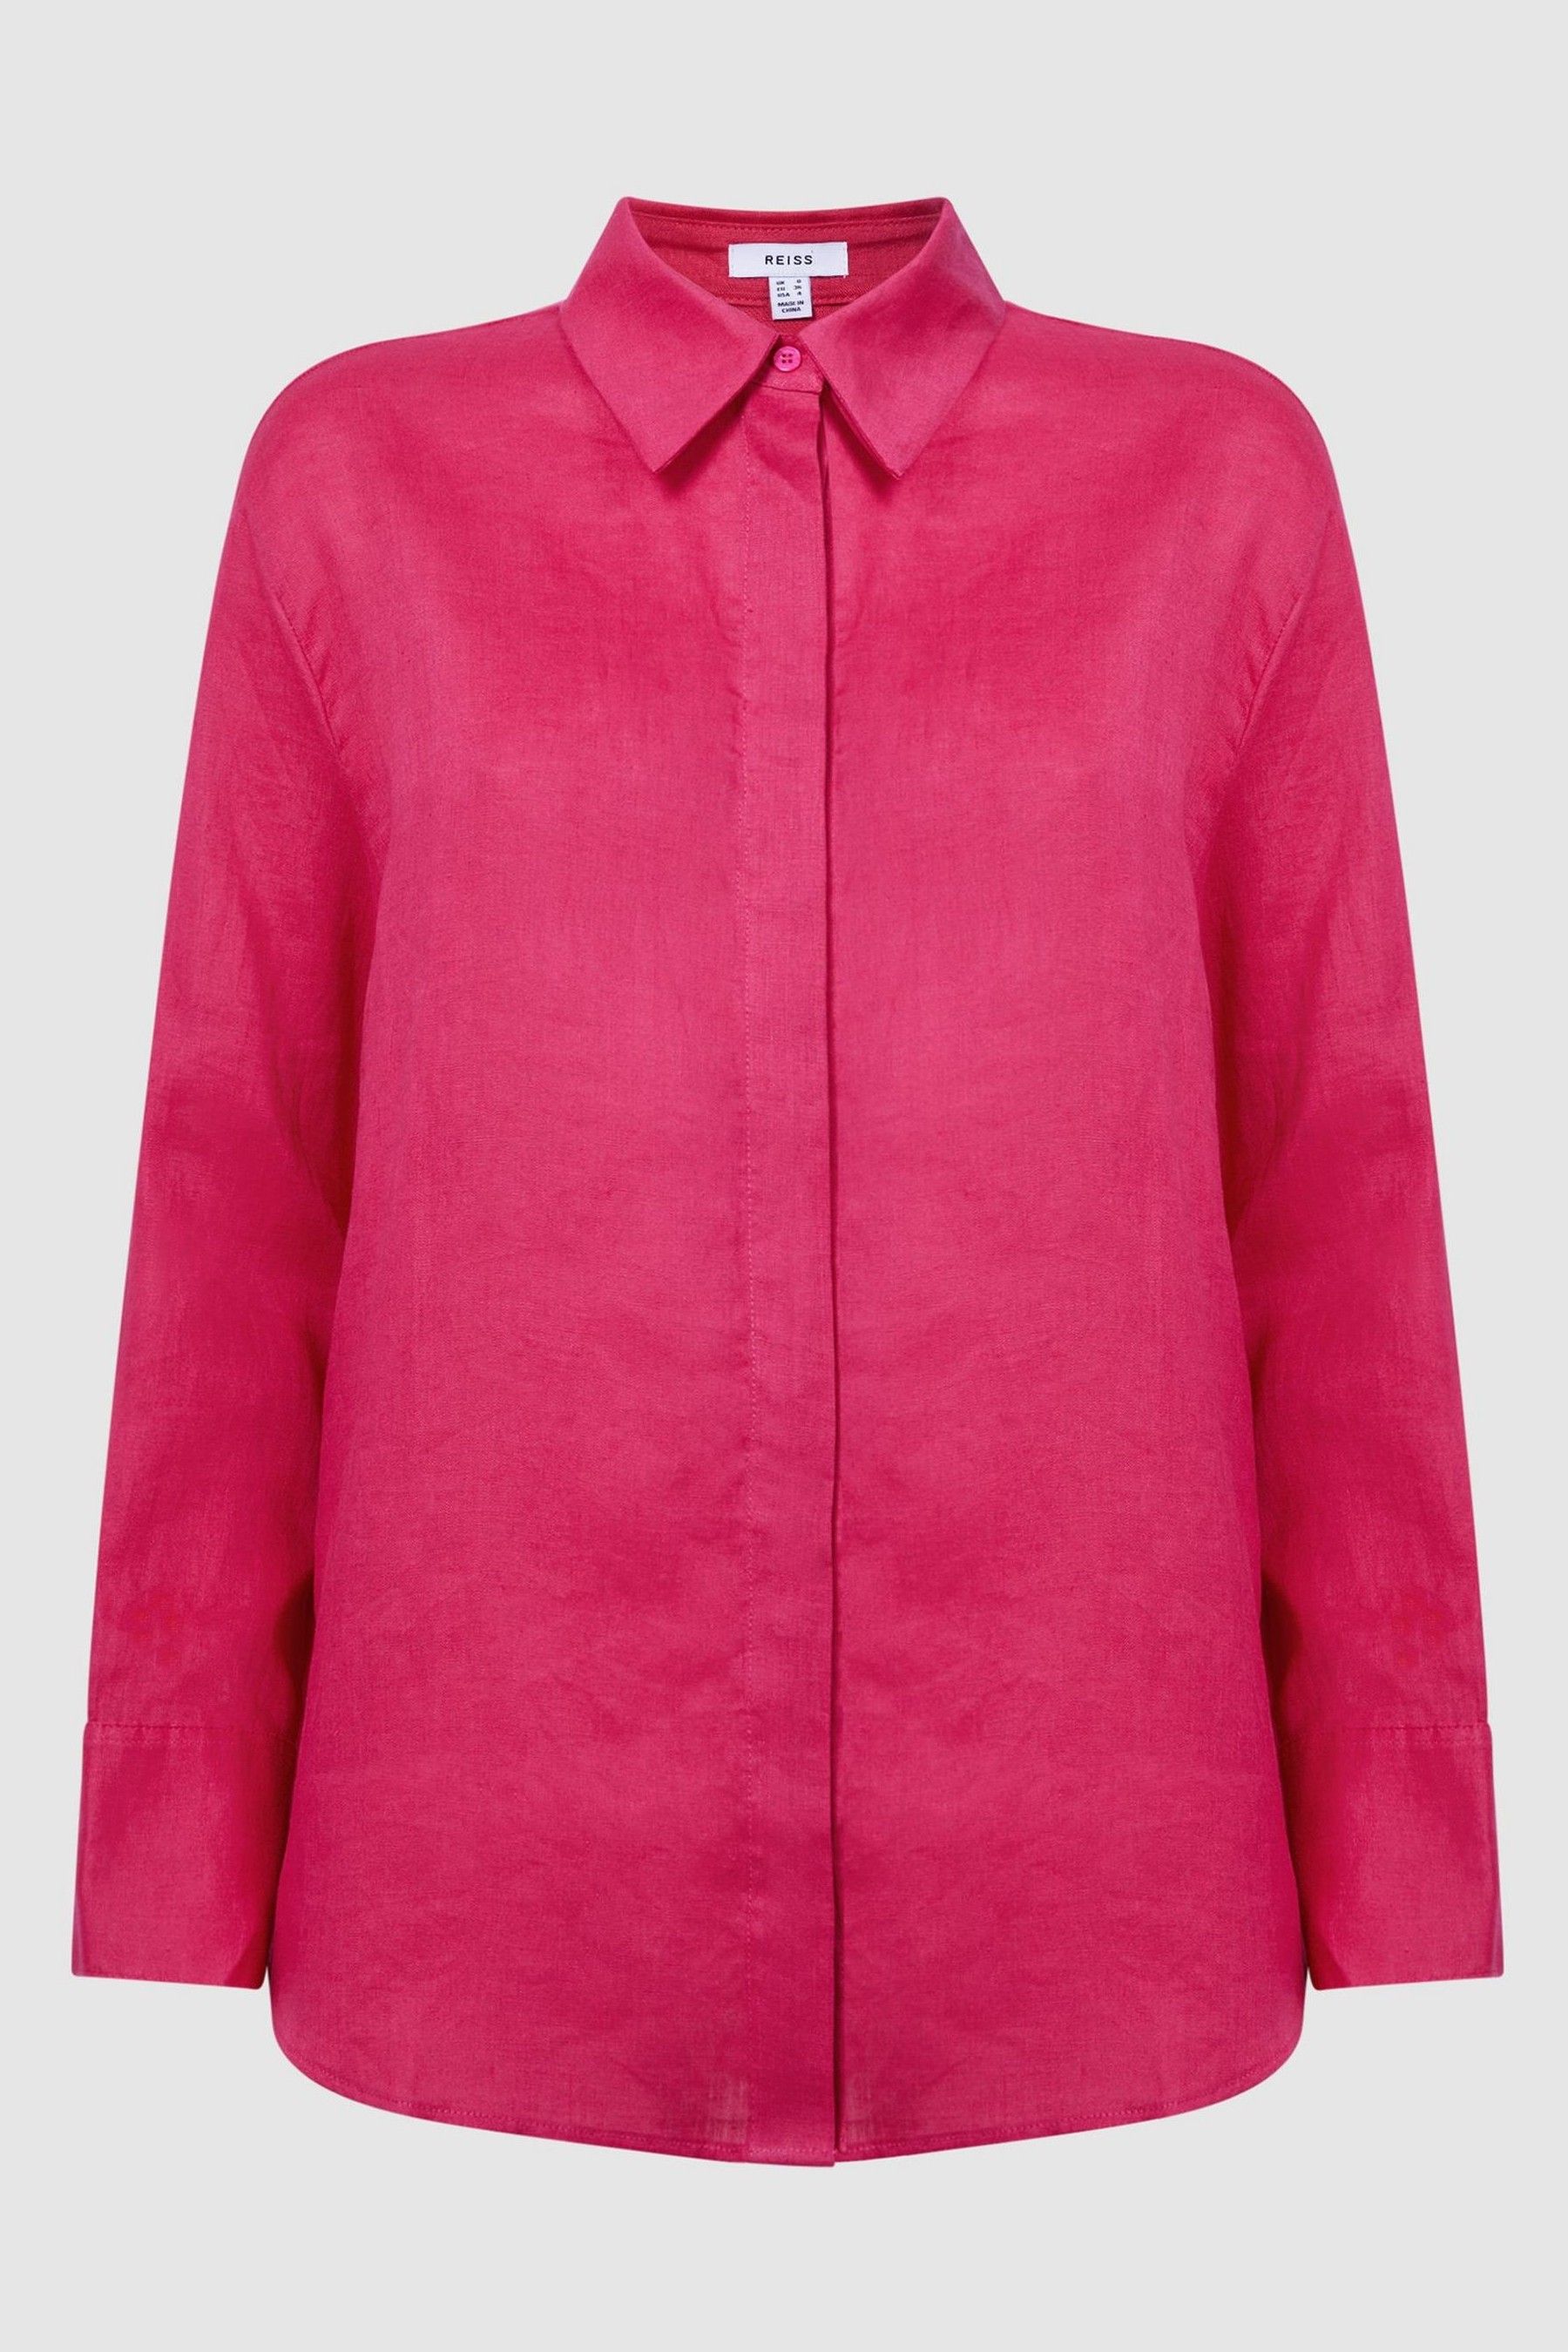 Buy Reiss Fuschia Cammie Oversized Linen Shirt from the Next UK online shop